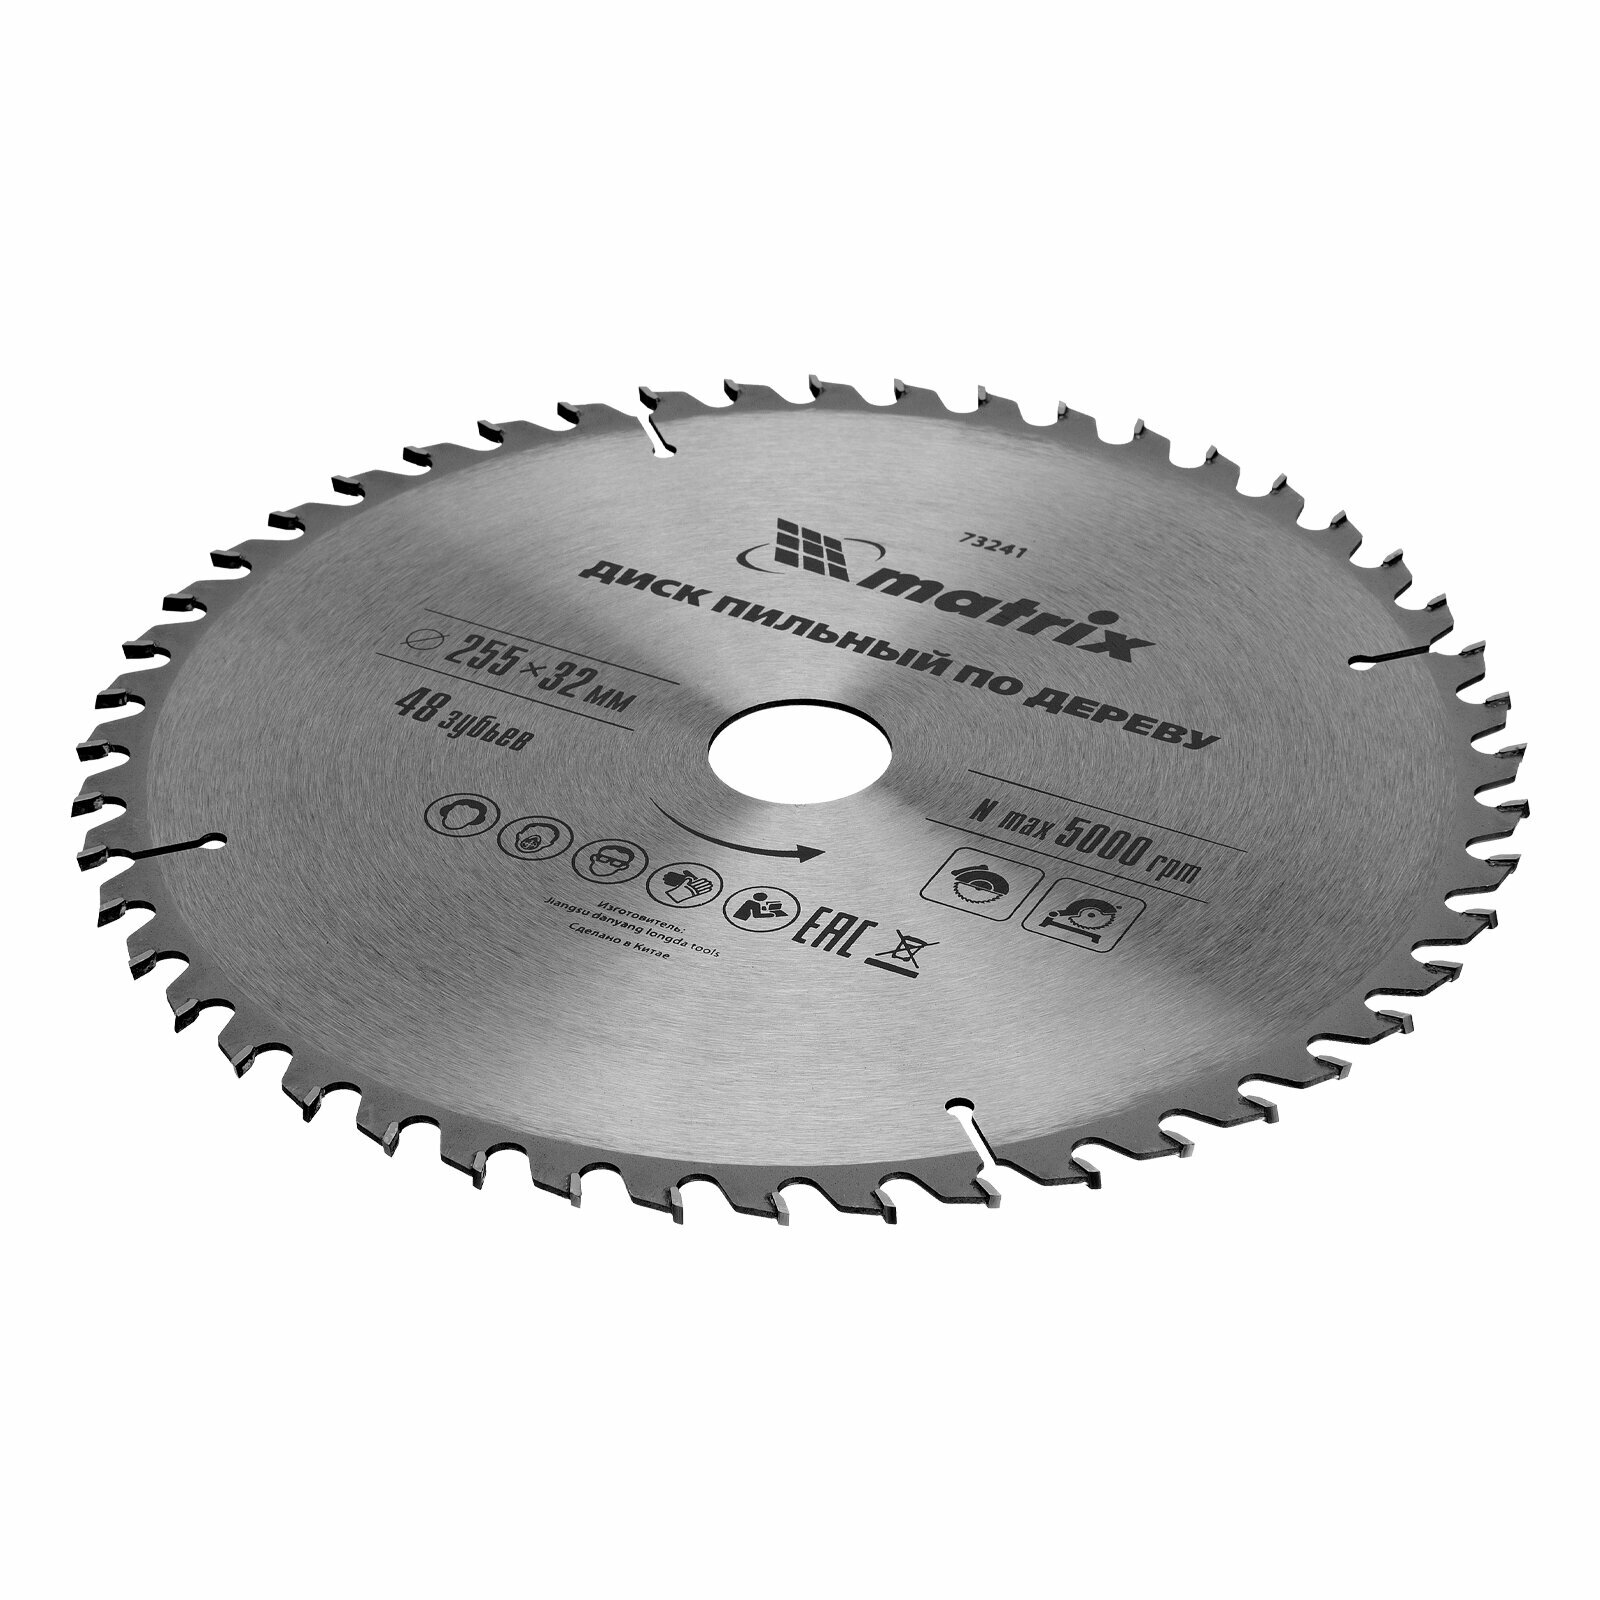 Пильный диск по дереву Matrix ф255 х 32 мм, 48 зубьев + кольцо 32/30 73241